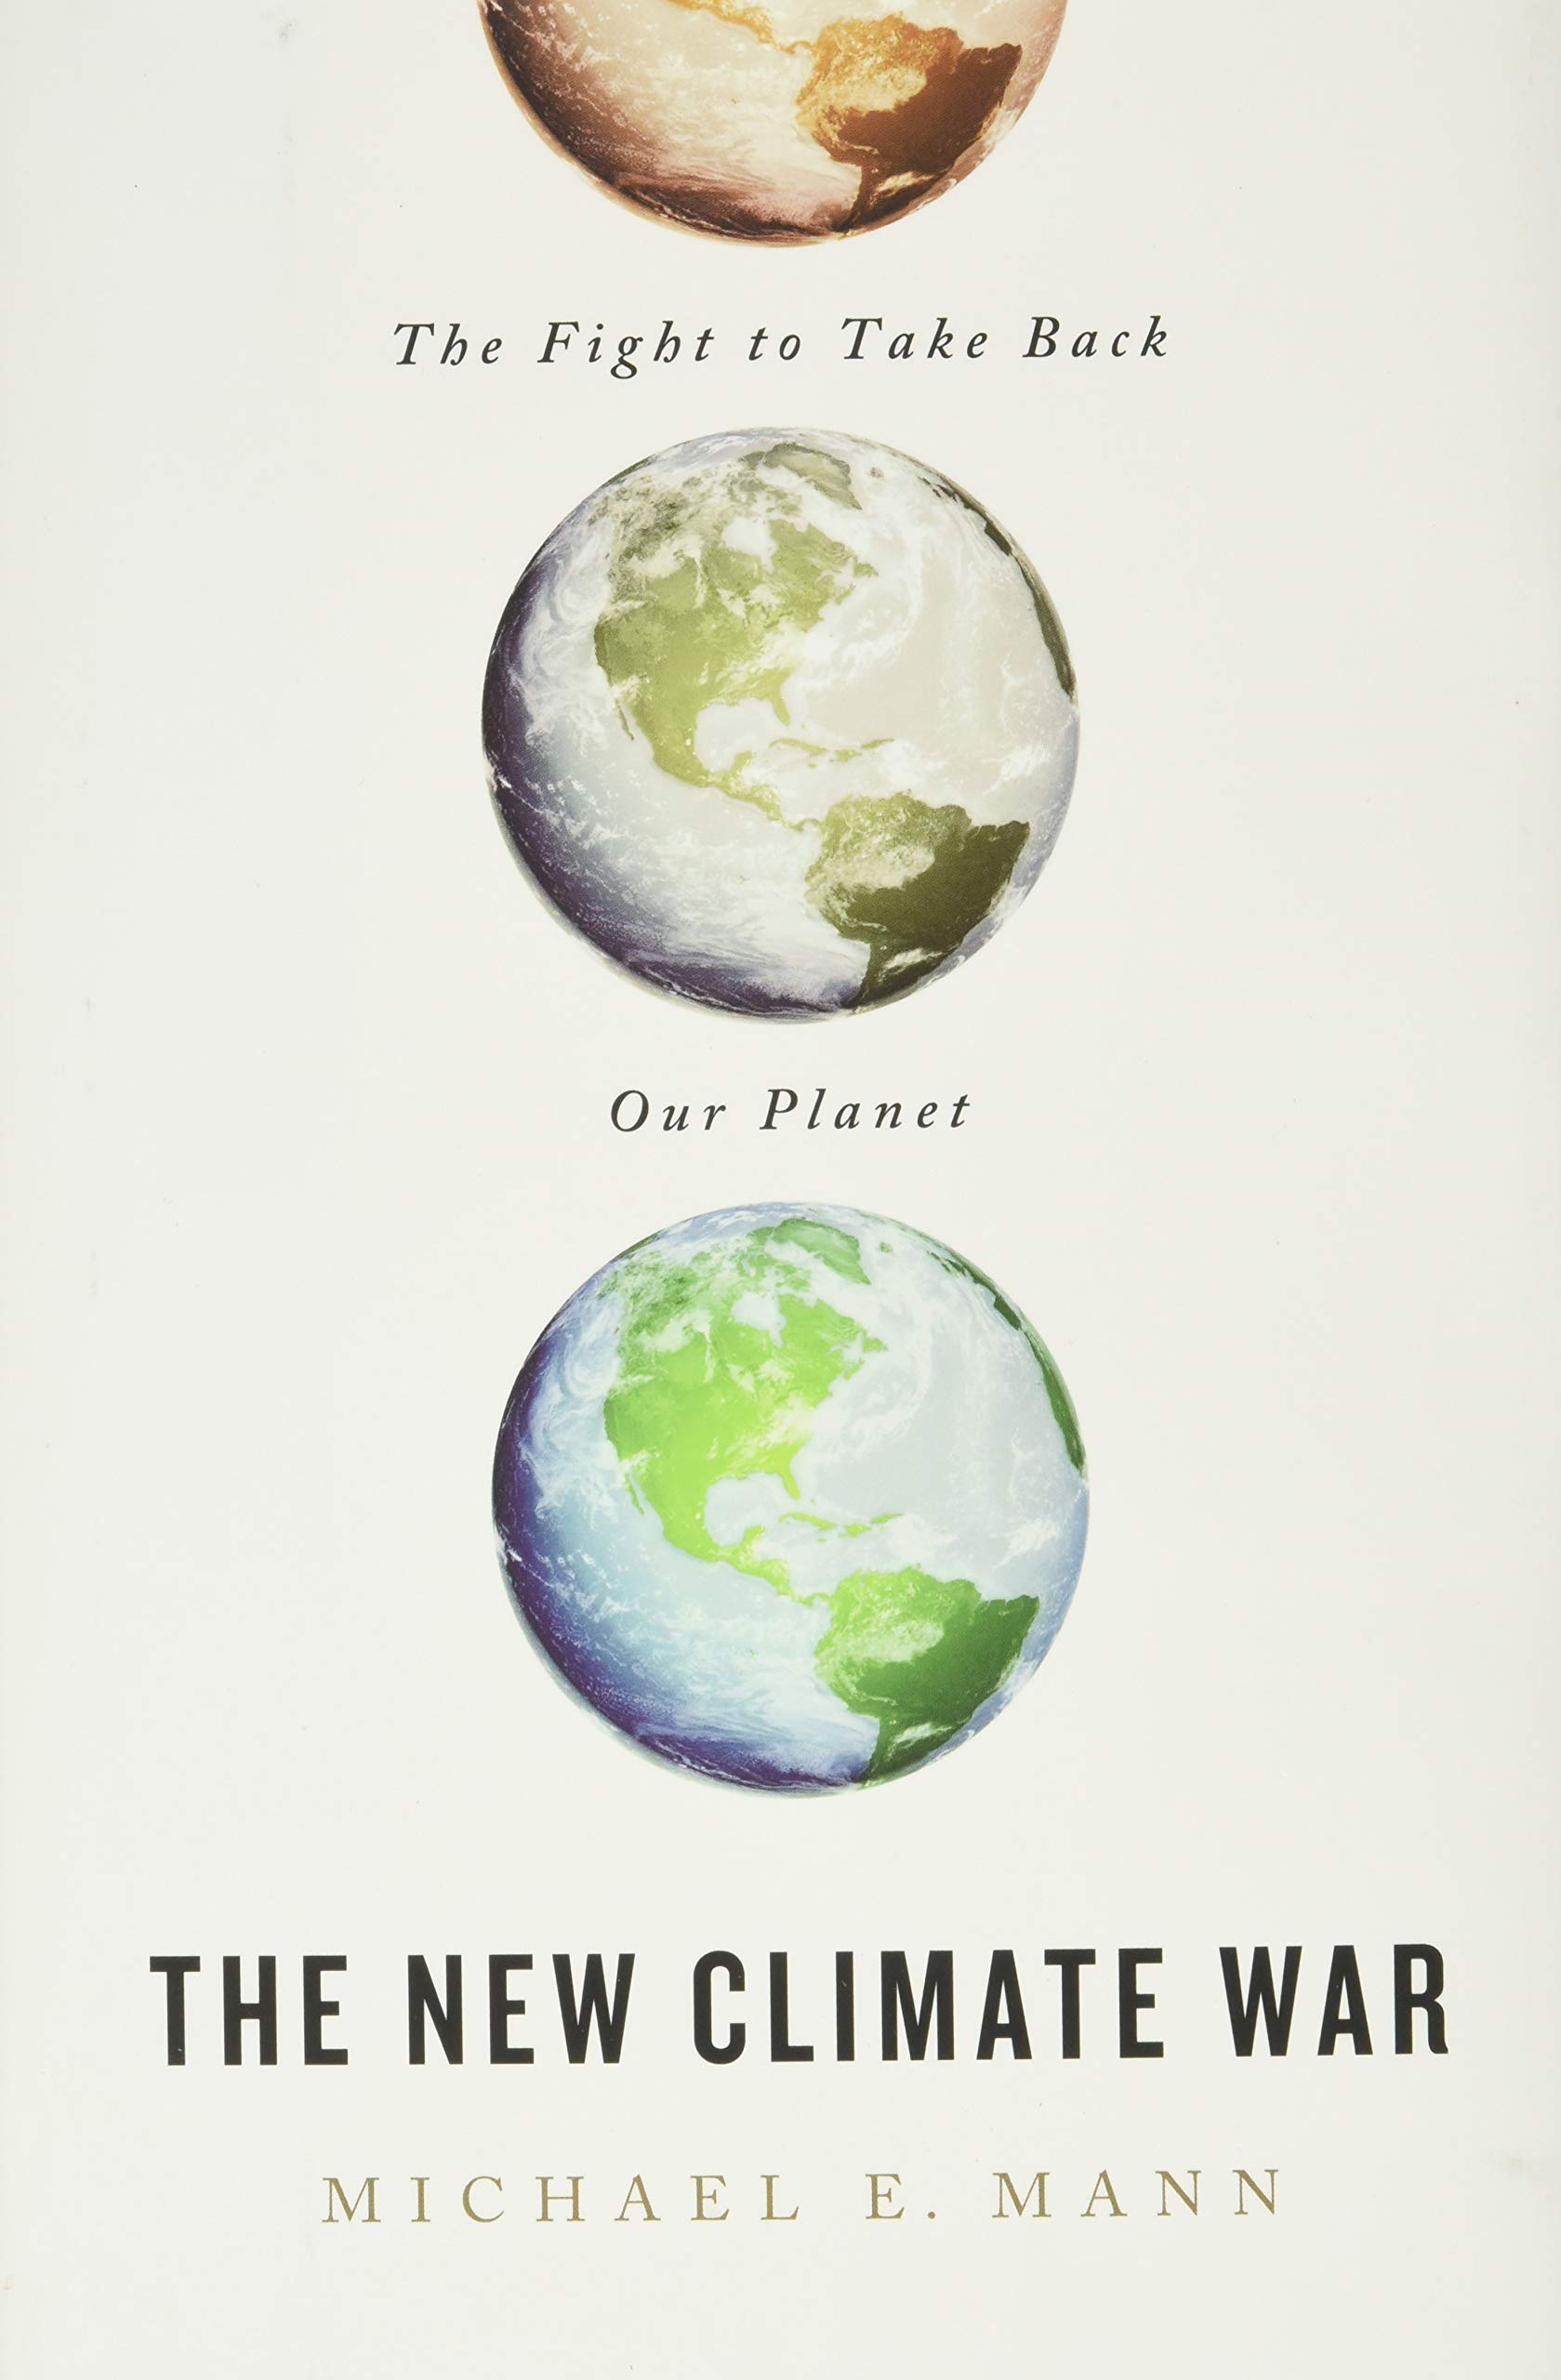 Michael E. Mann: The New Climate War (2021, Public Affairs)